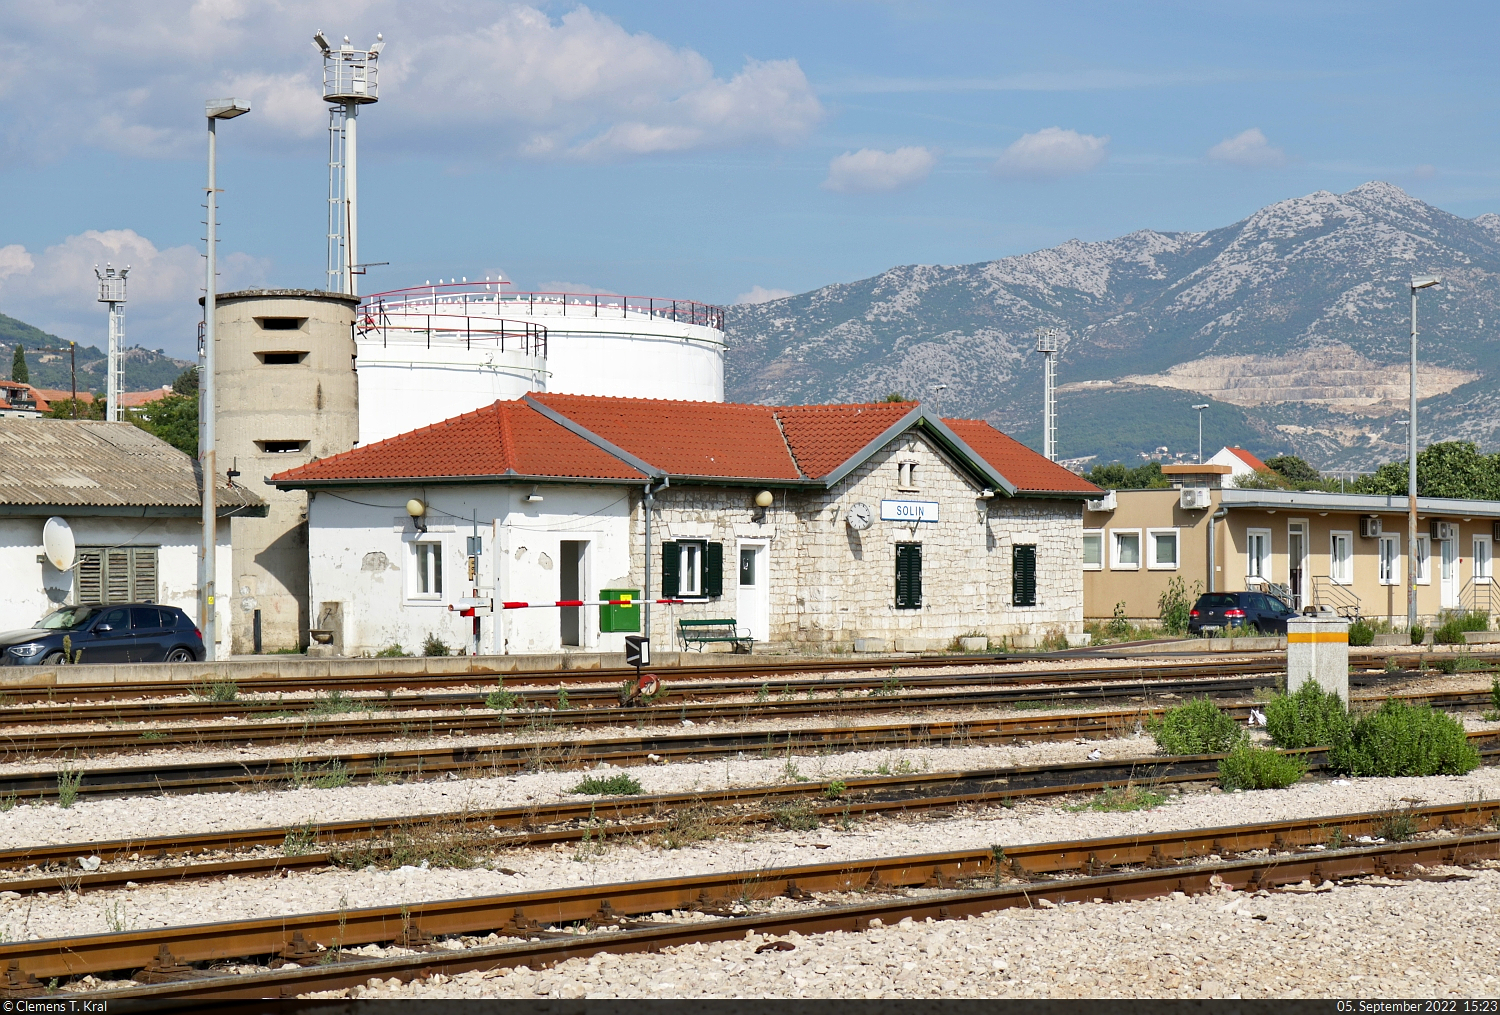 Das Empfangsgebäude des Bahnhofs Solin (HR), fotografiert vom Bootsanleger. Für den Personenverkehr spielt er eine untergeordnete Rolle, stattdessen dominiert der Güterverkehr für das CEMEX Zementwerk.

🕓 5.9.2022 | 15:23 Uhr